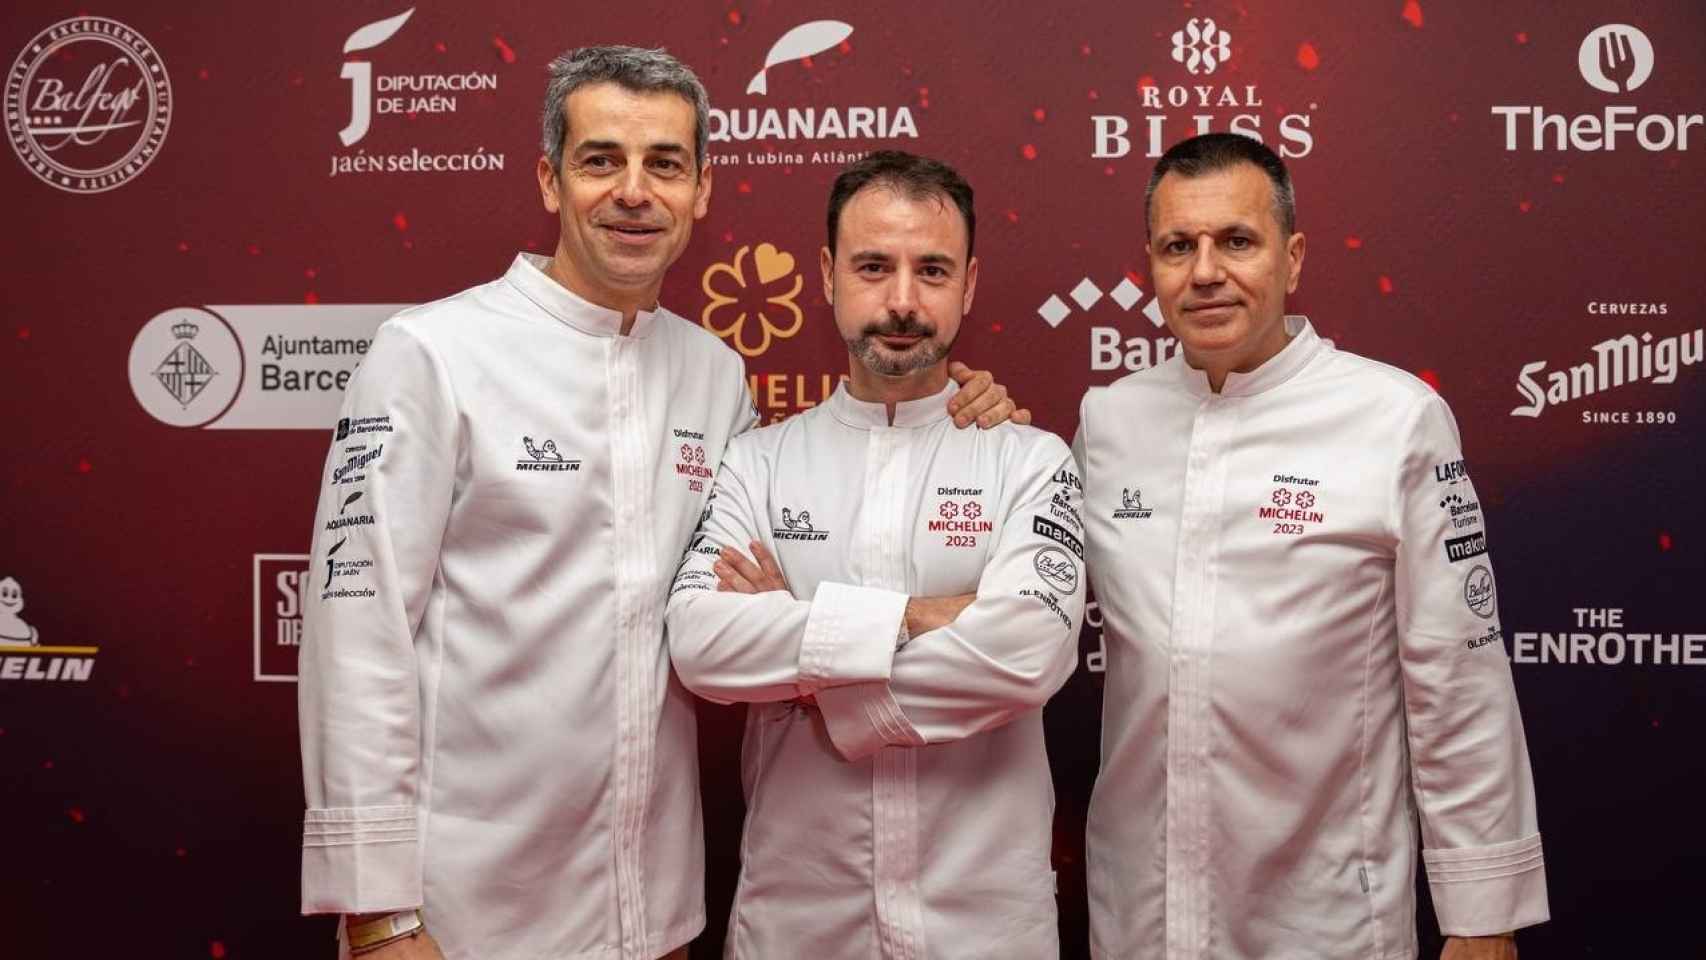 Los cocineros Eduard Xatruch, Oriol Castro y Mateu Casañas, chefs del restaurante Disfrutar, en la gala de entrega de las estrellas Michelín